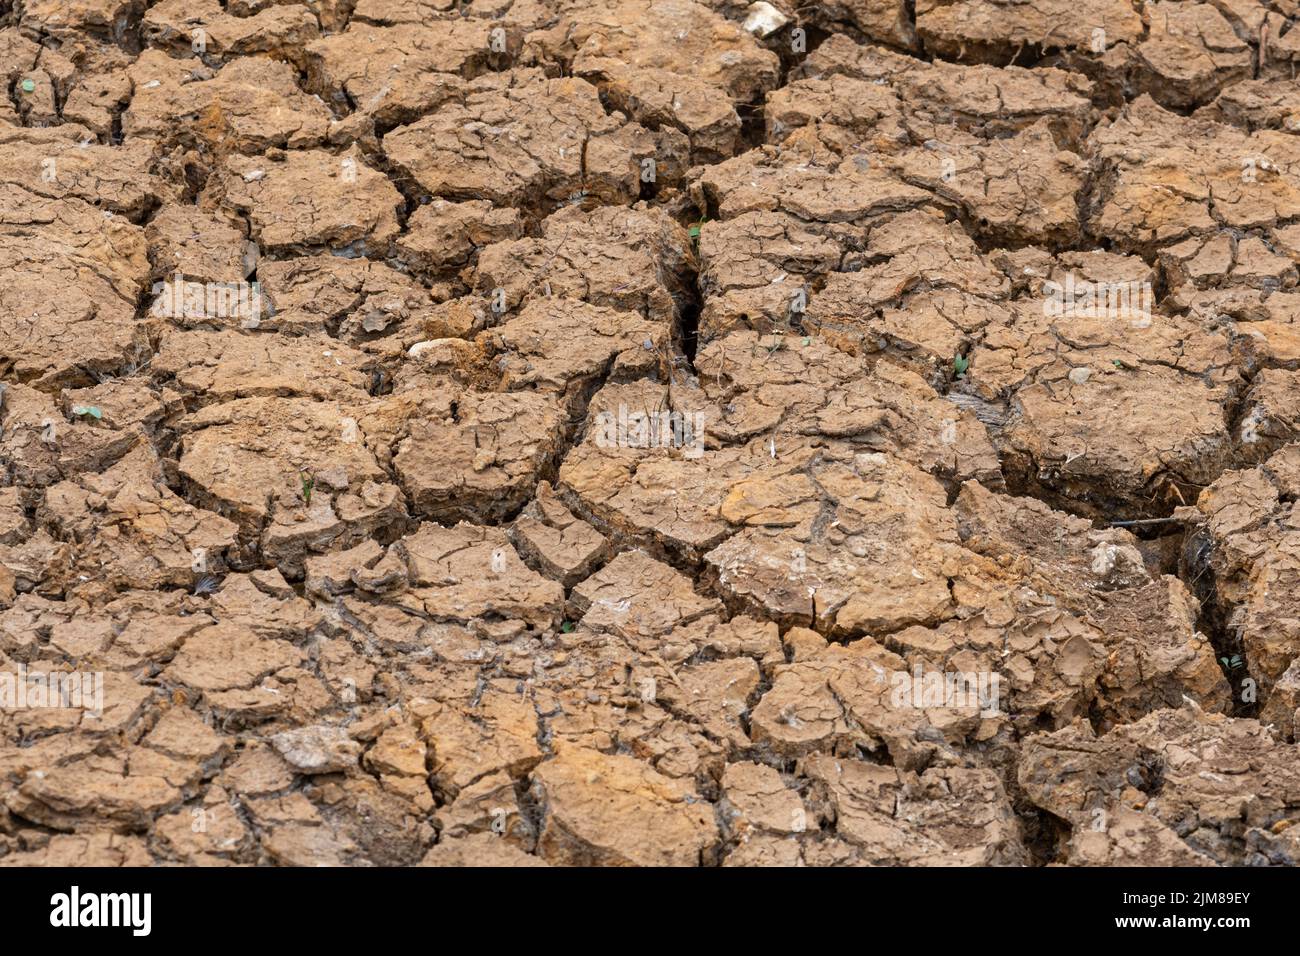 Seco estanque, agrietado tierra, durante la sequía del verano de 2022, Hampshire, Inglaterra, Reino Unido Foto de stock